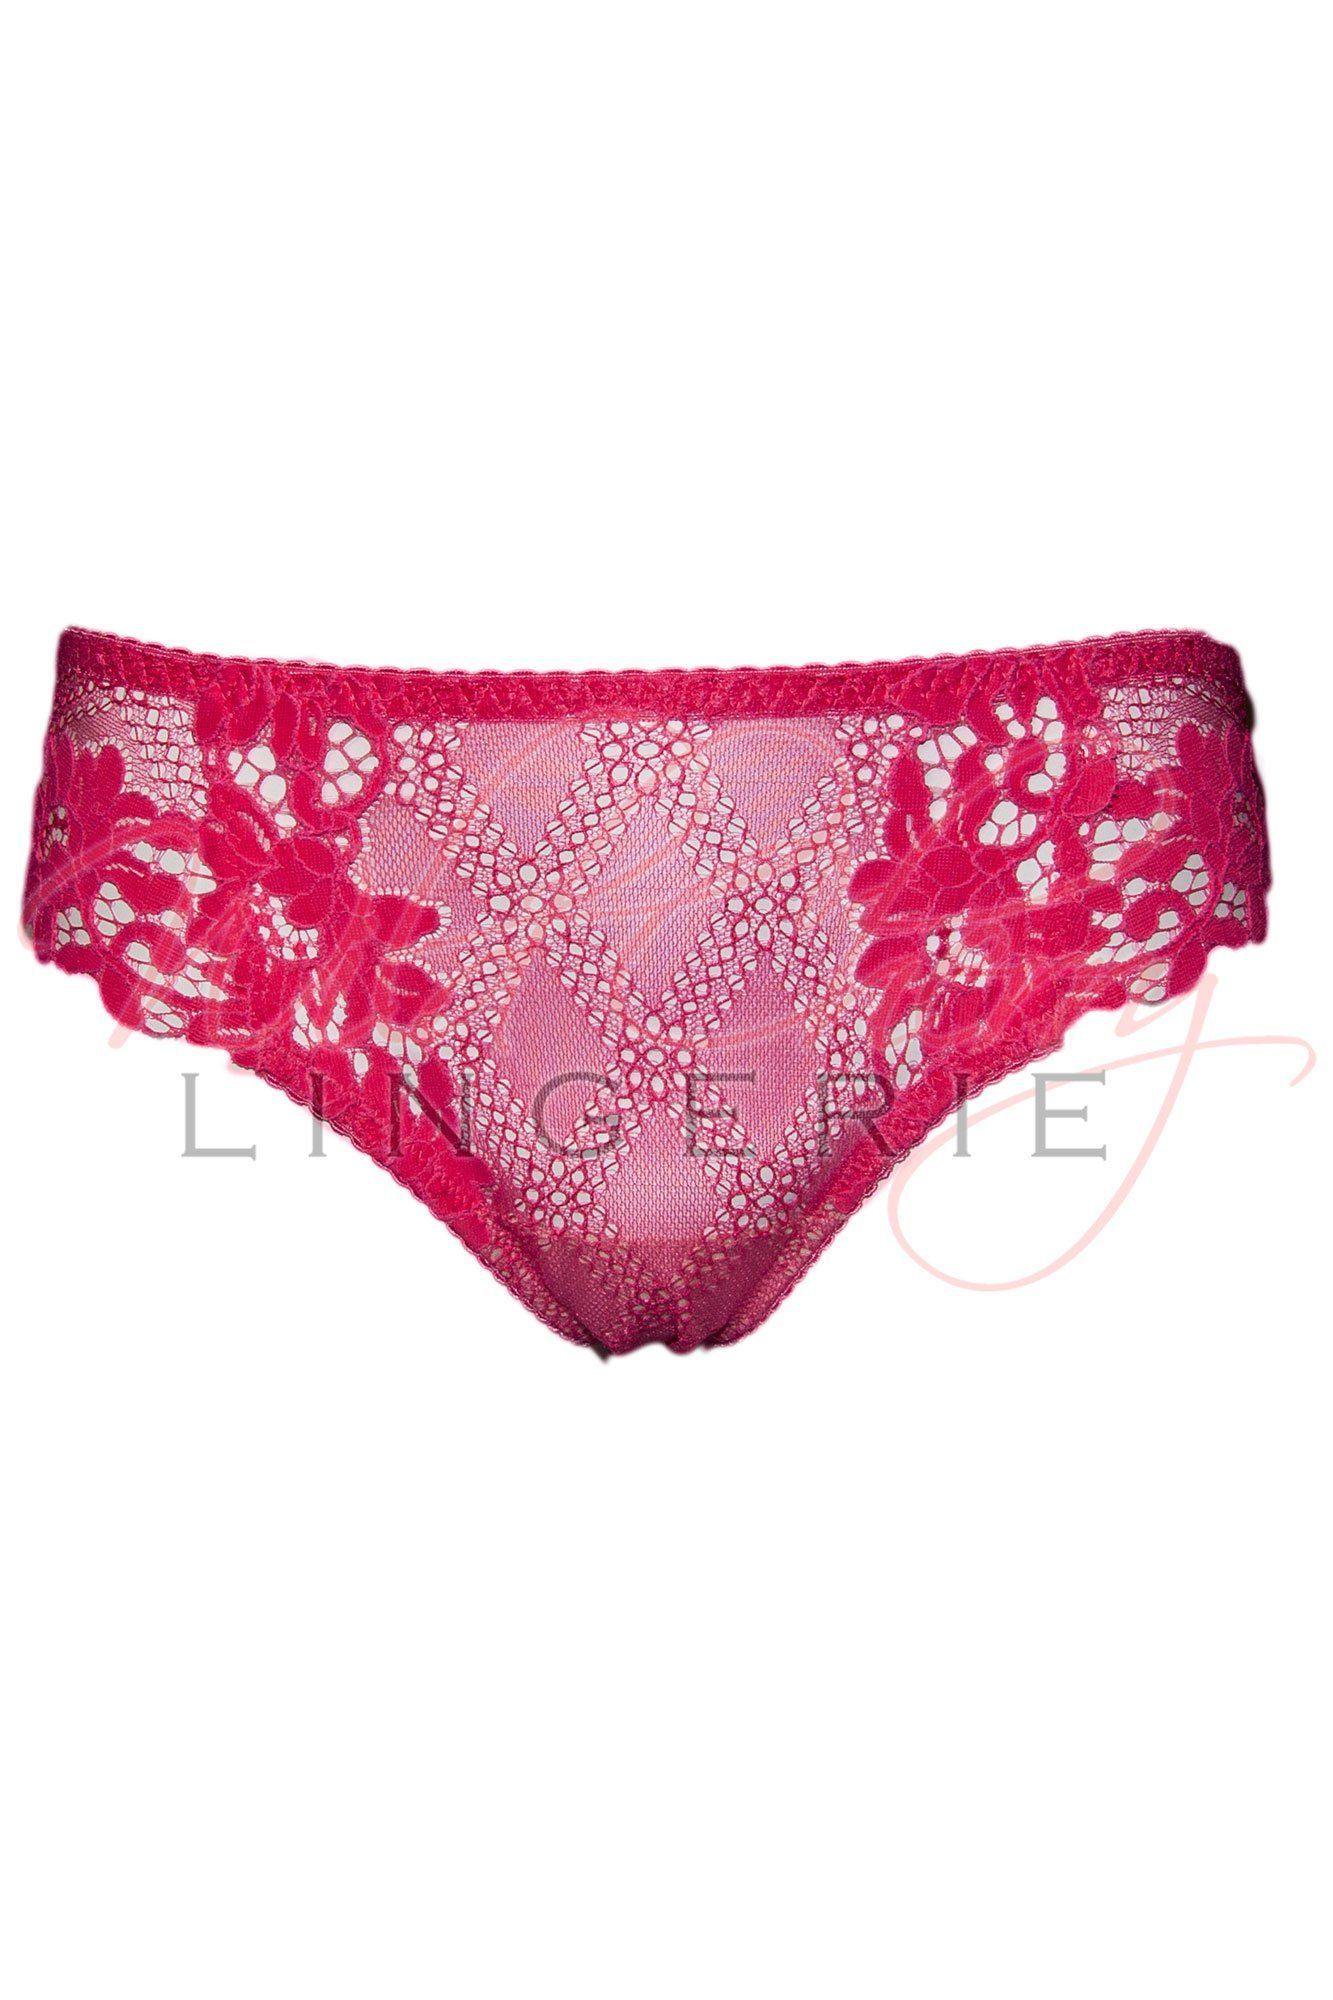 Daniella Pink Collection Hipster Panty VIPA Lingerie, Panties, VIPA Lingerie - Wild Cherry Lingerie